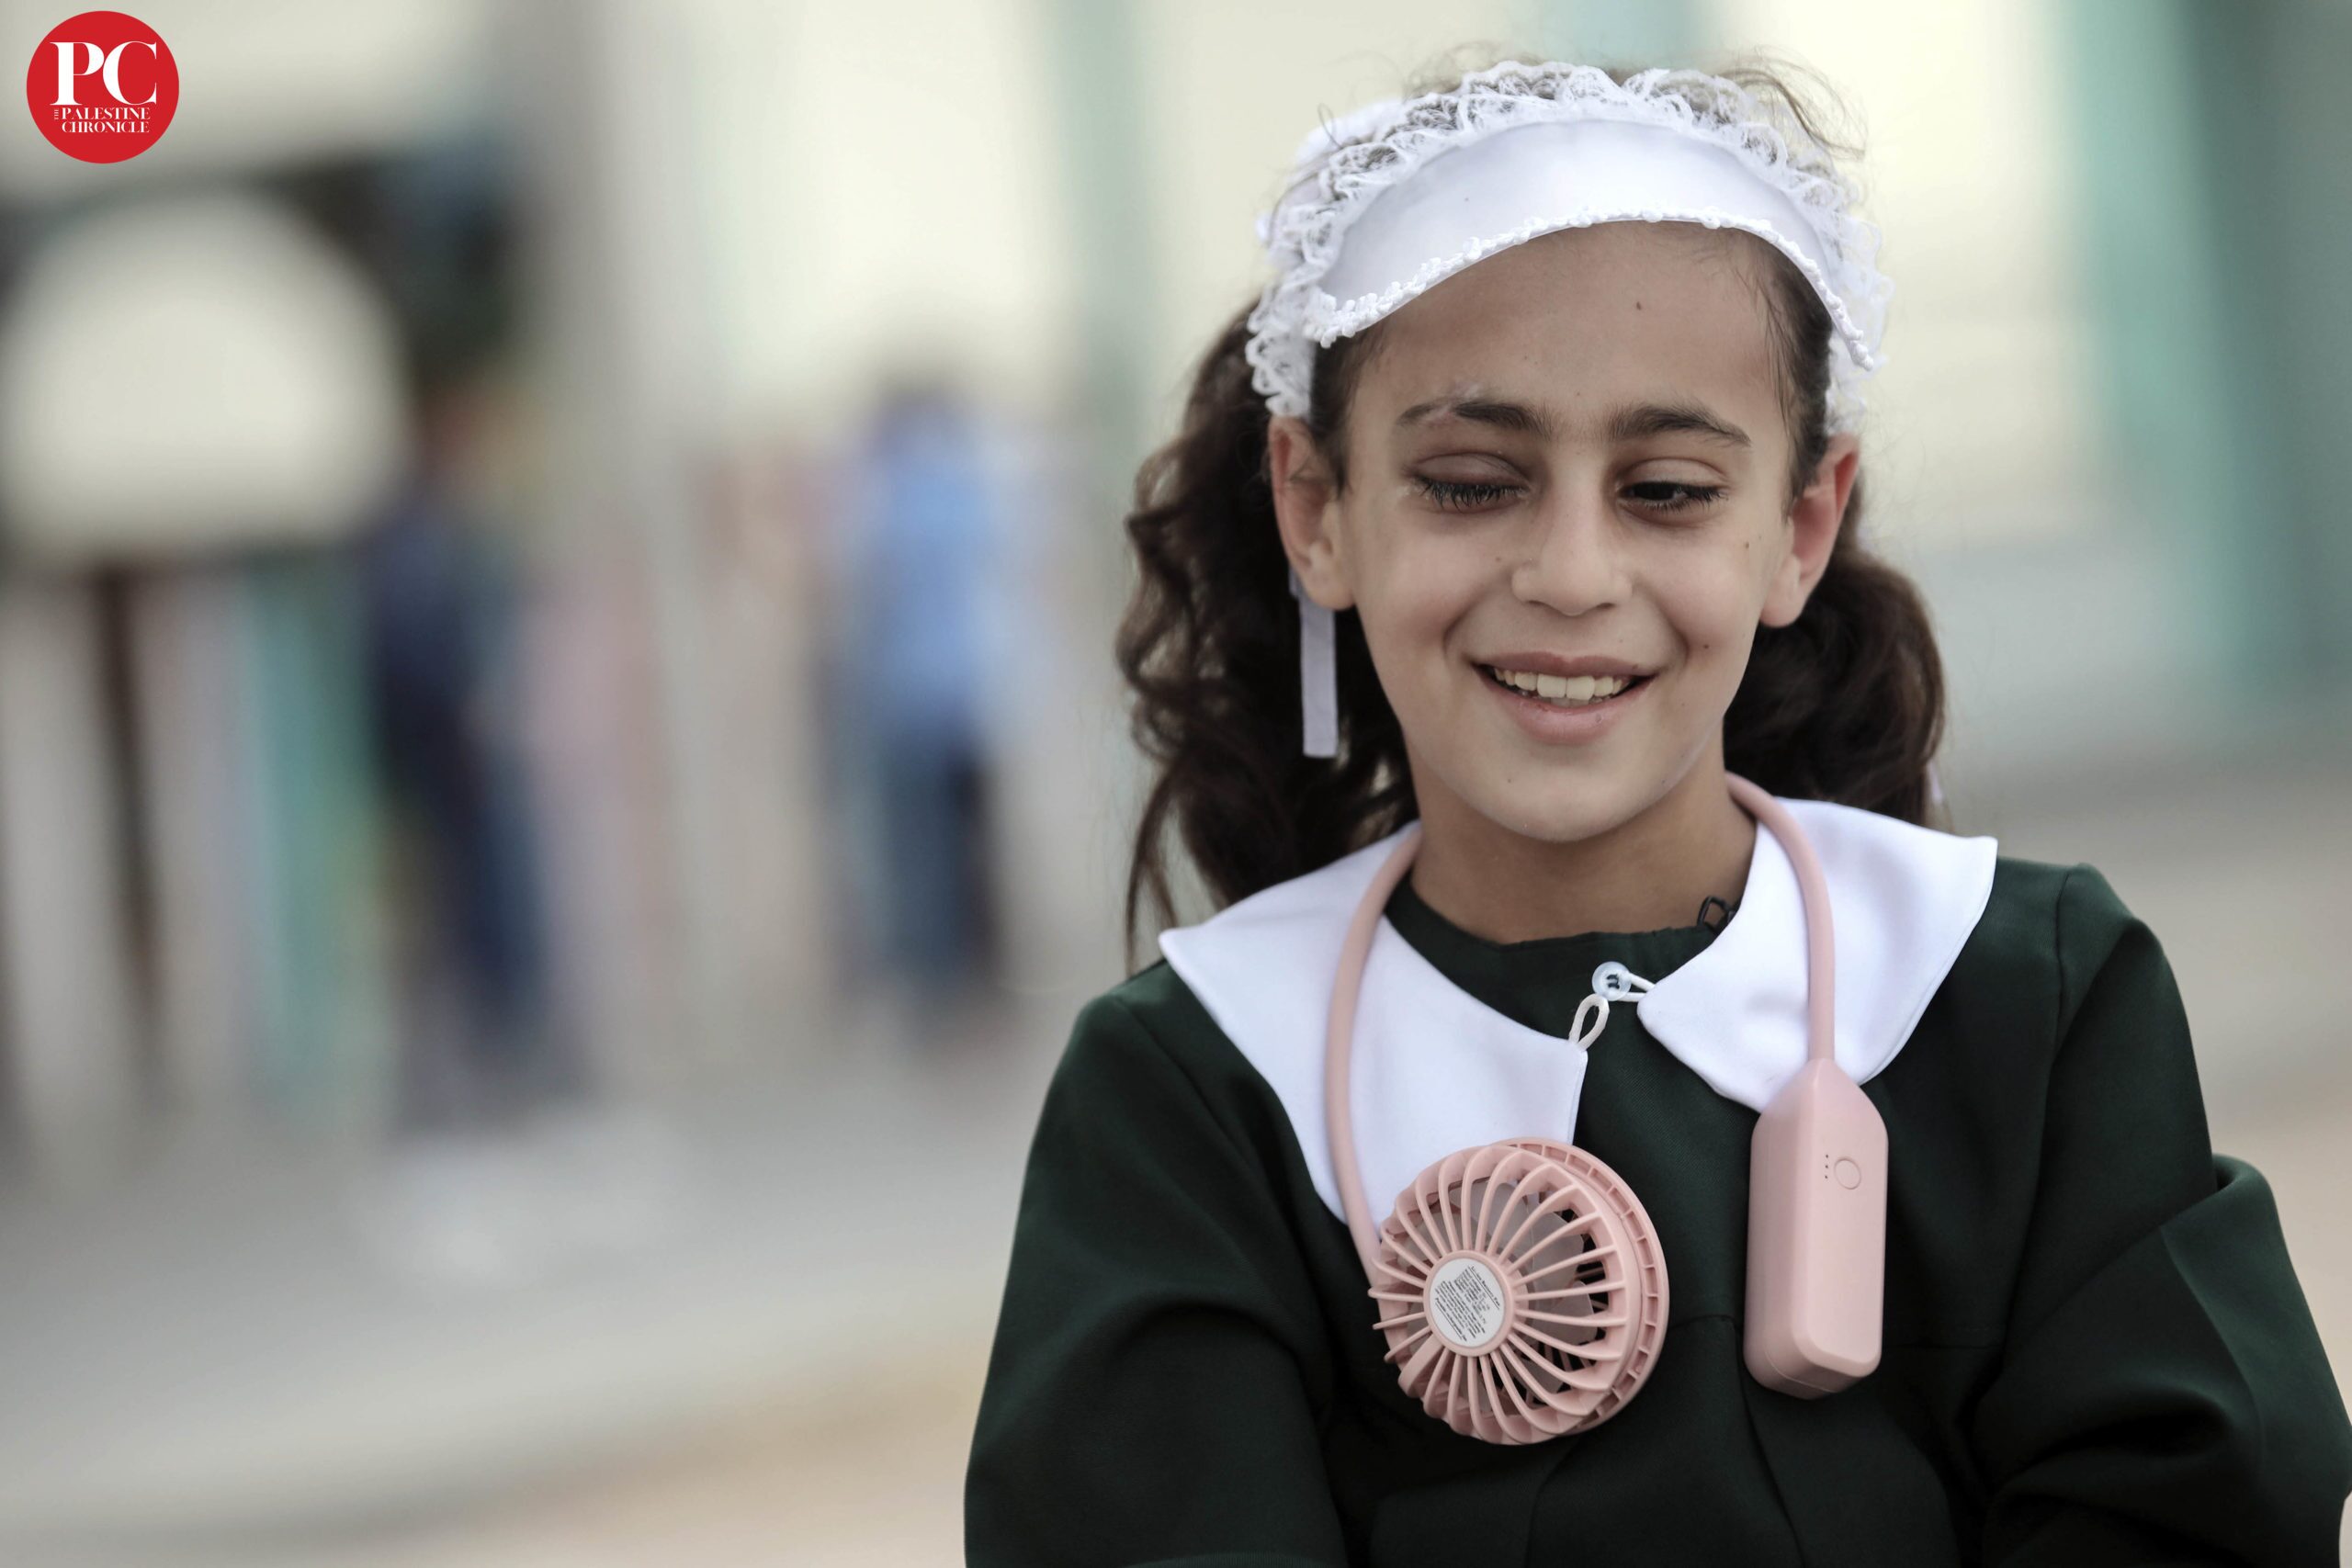 “La mia vita non sarà mai più la stessa”: la ragazzina di Gaza che ha perso l’occhio durante l’offensiva israeliana, parla del futuro